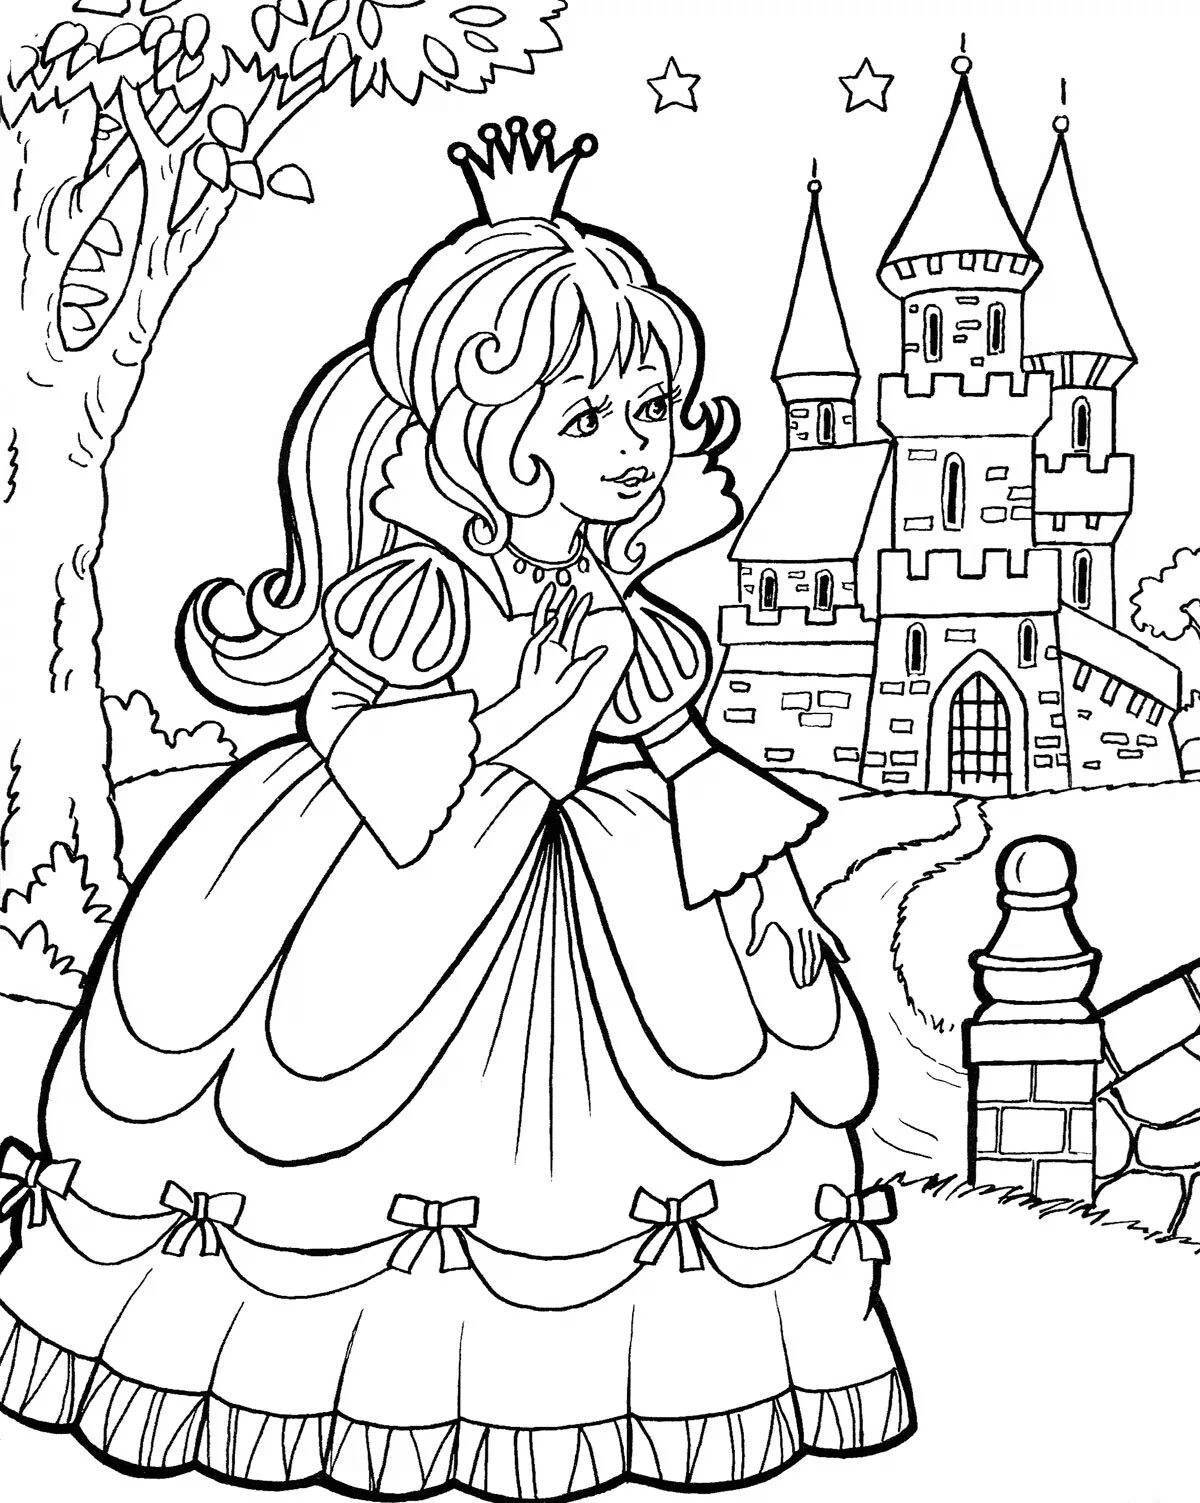 Раскраска Принцесса возле замка, распечатать или скачать из категории 